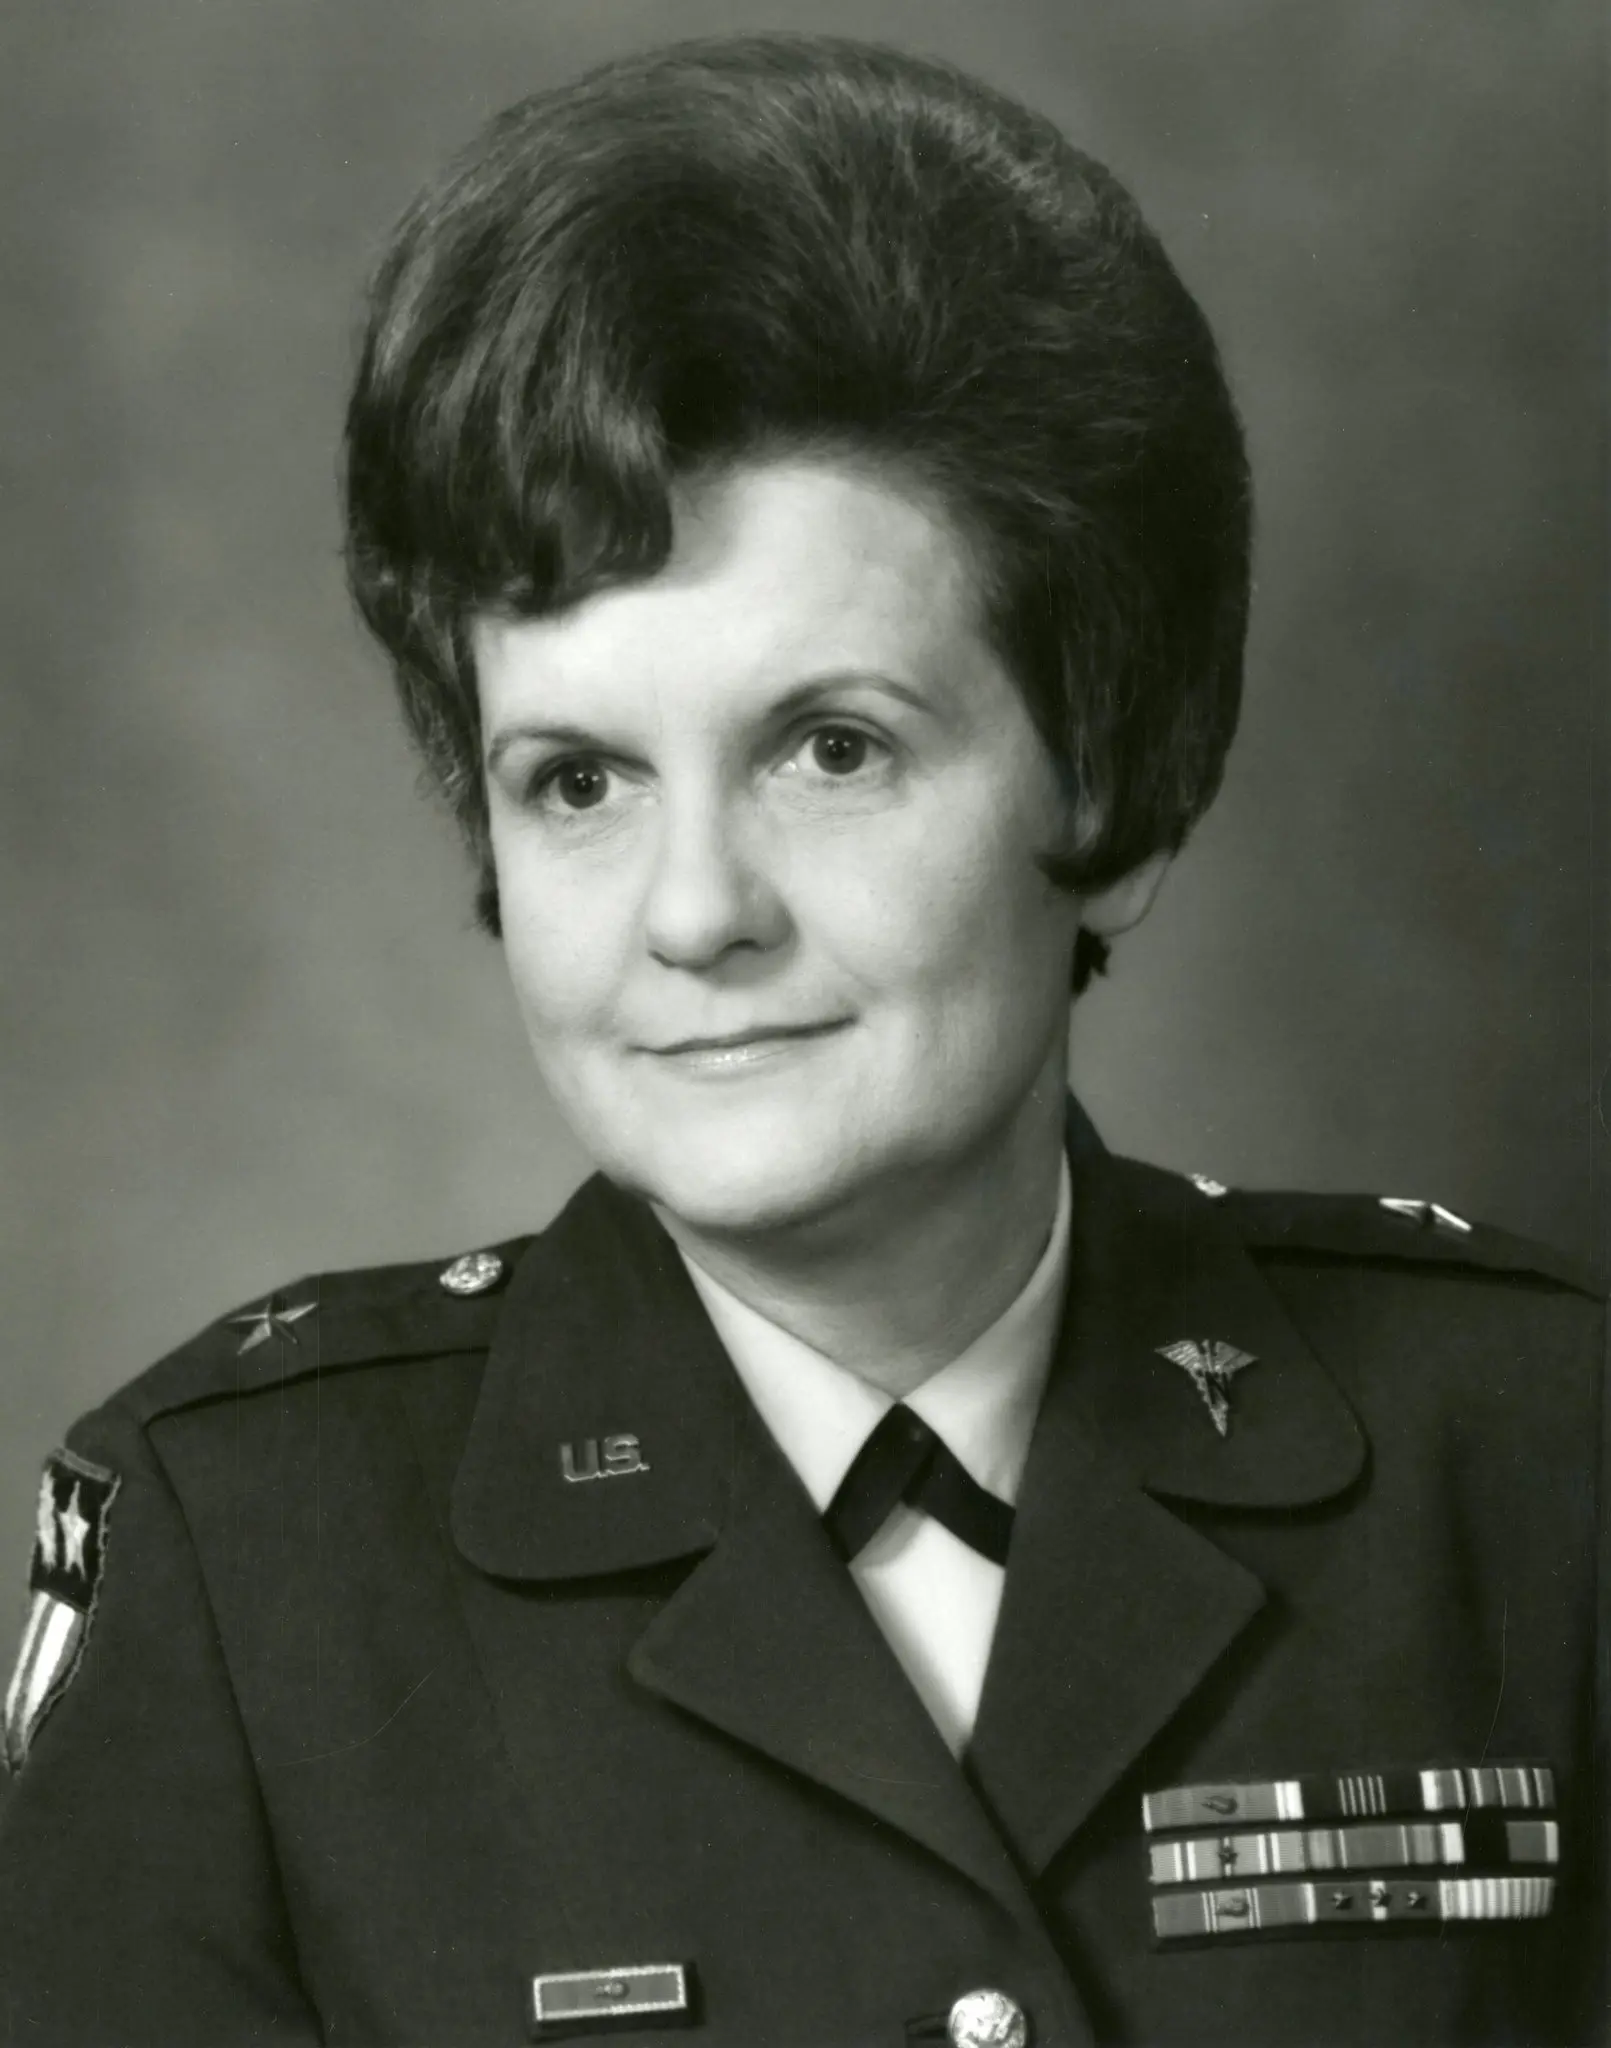 General Hays em 1970. (Crédito: Centro de Patrimônio e Educação do Exército dos EUA)